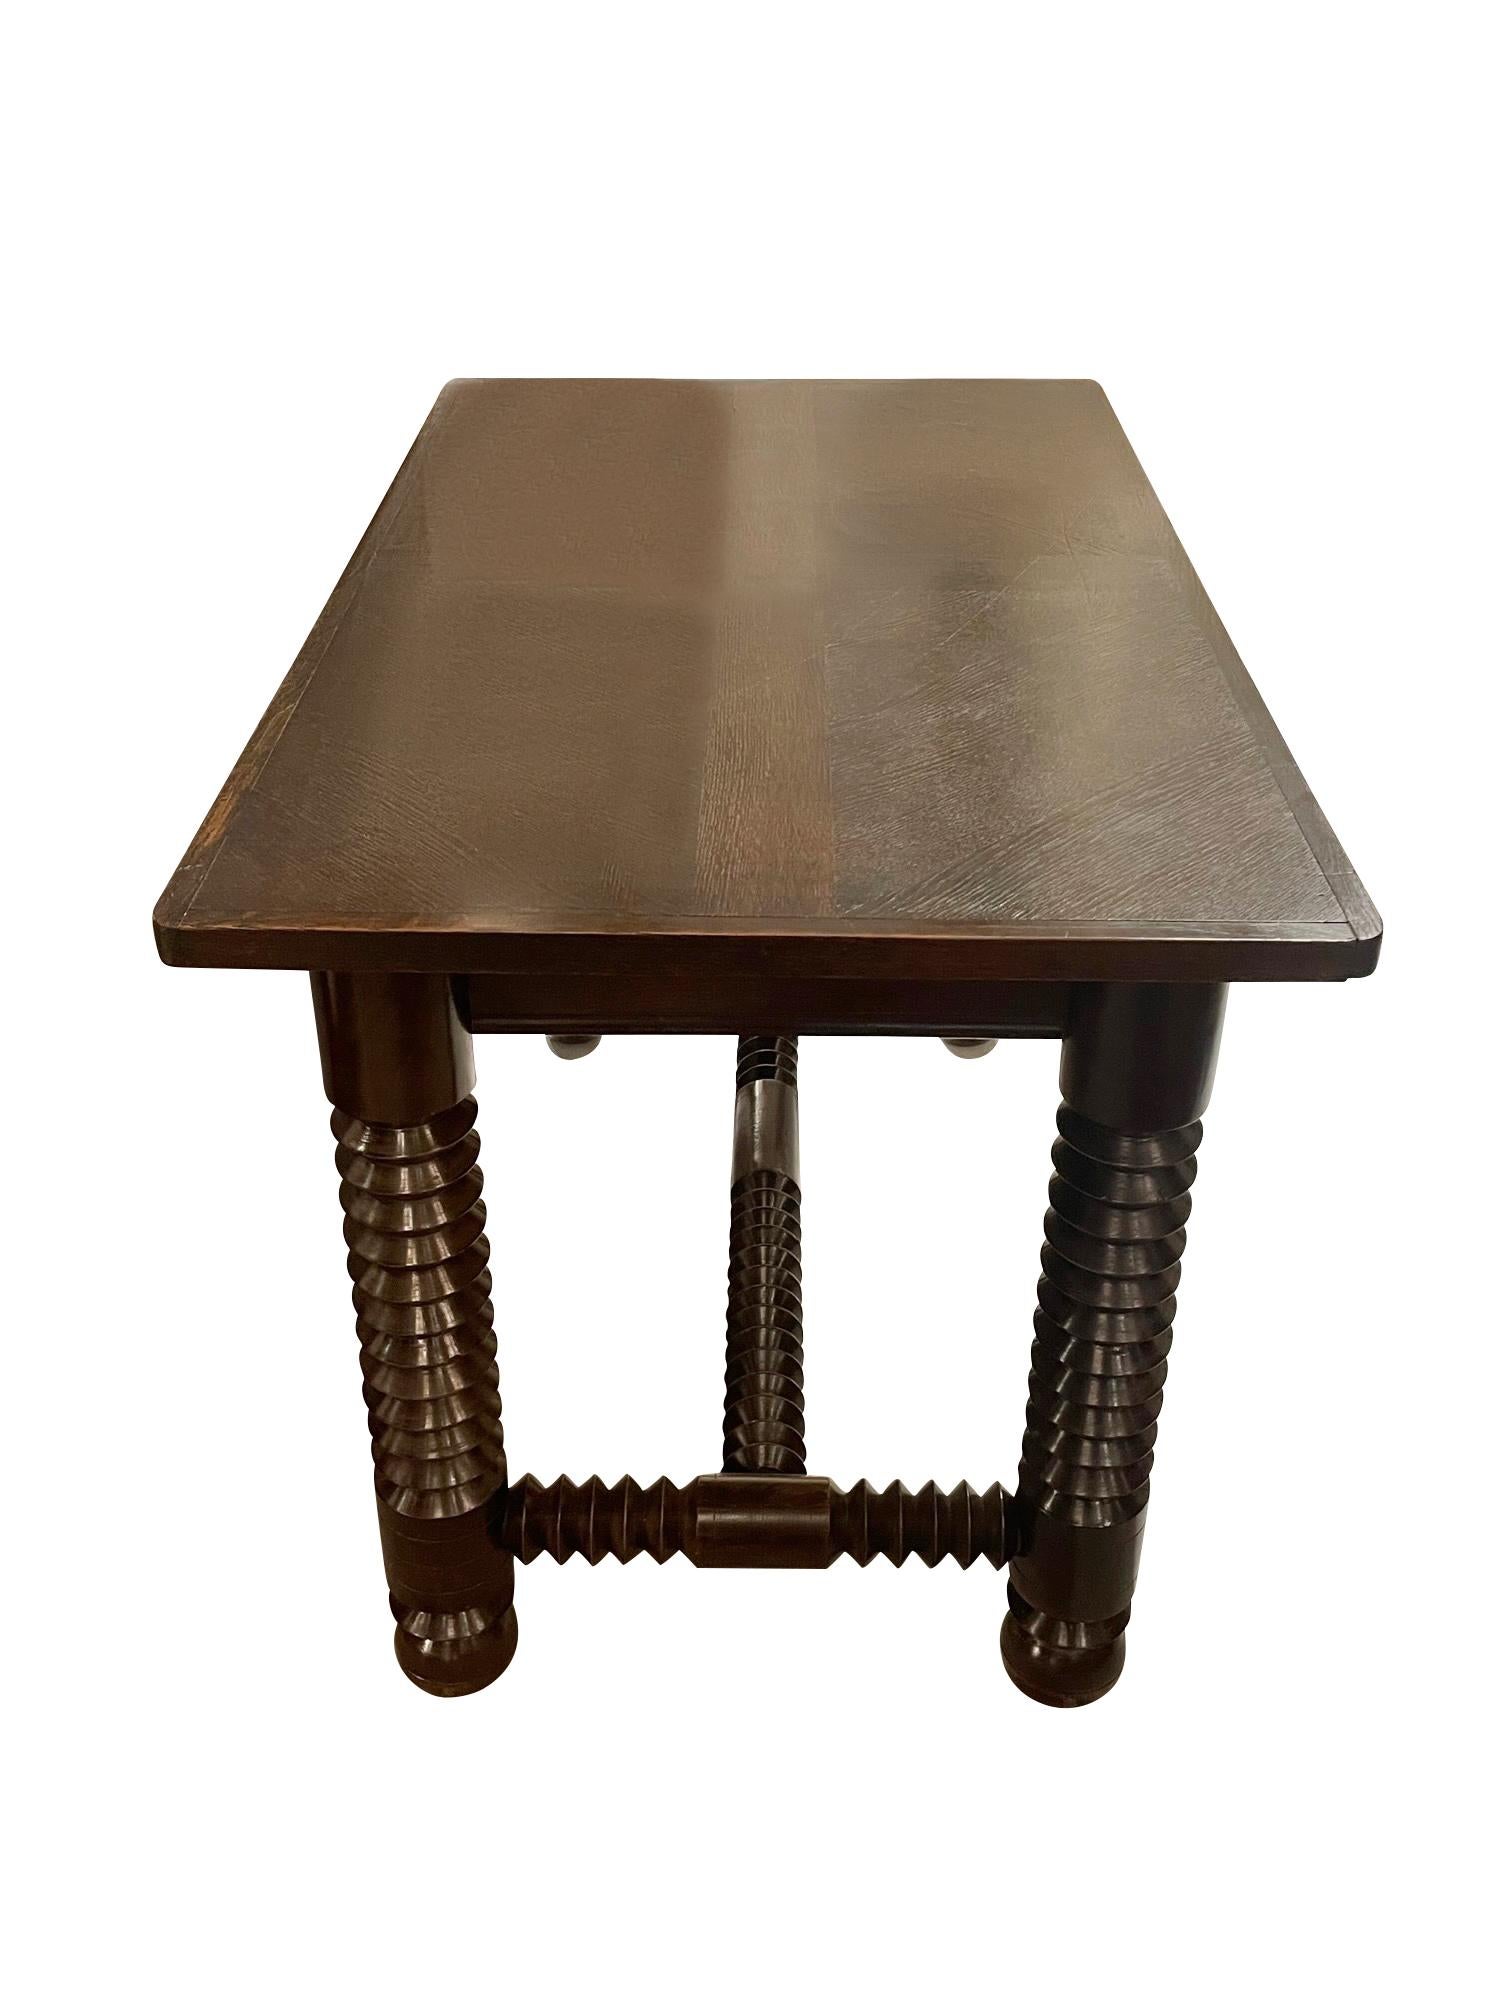 Französischer Spieltisch von Charles Dudouyt aus den 1940er Jahren.
Kann auch als Schreibtisch verwendet werden.
Charakteristisches Spulenbein- und Läuferdesign. 
Kugelförmige Beine.
Kürzlich restauriert und neu lackiert.